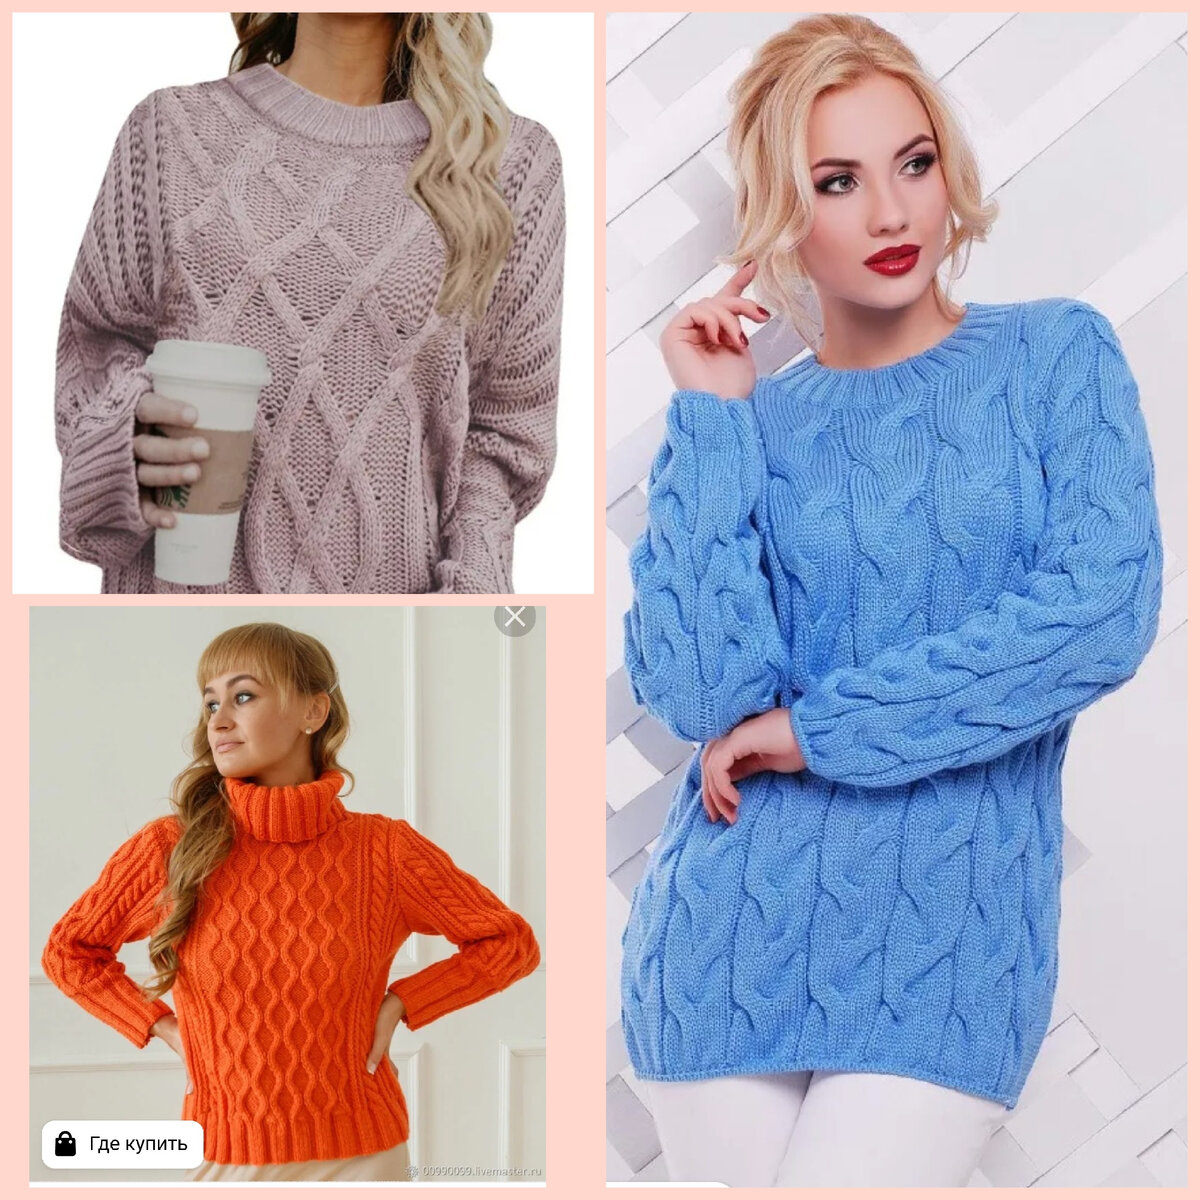    Предлагаю вашему вниманию несколько ярких идей  джемперов и пуловеров для вязания спицами со схемами .